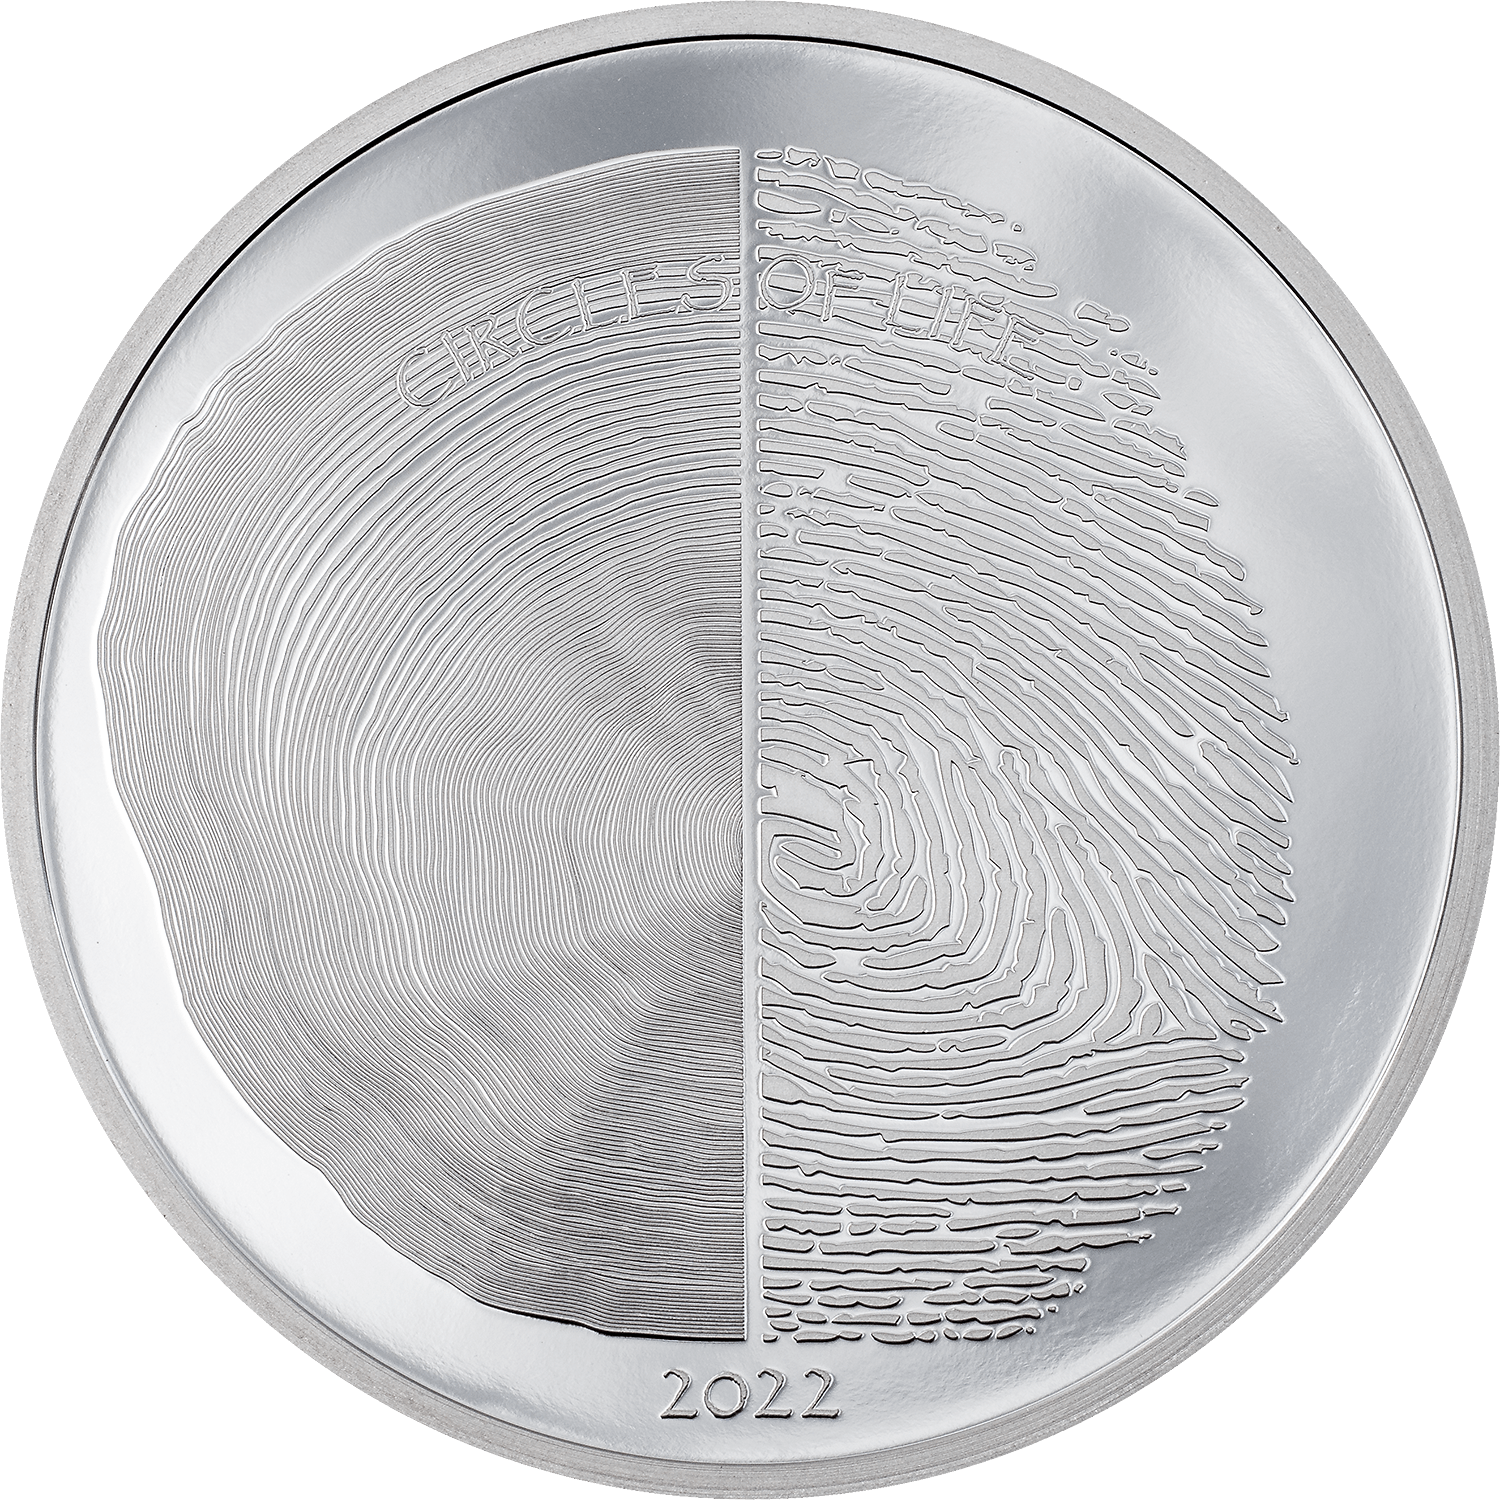 CIRCLES OF LIFE Nature 1 Oz Silver Coin $5 Cook Islands 2022 - PARTHAVA COIN